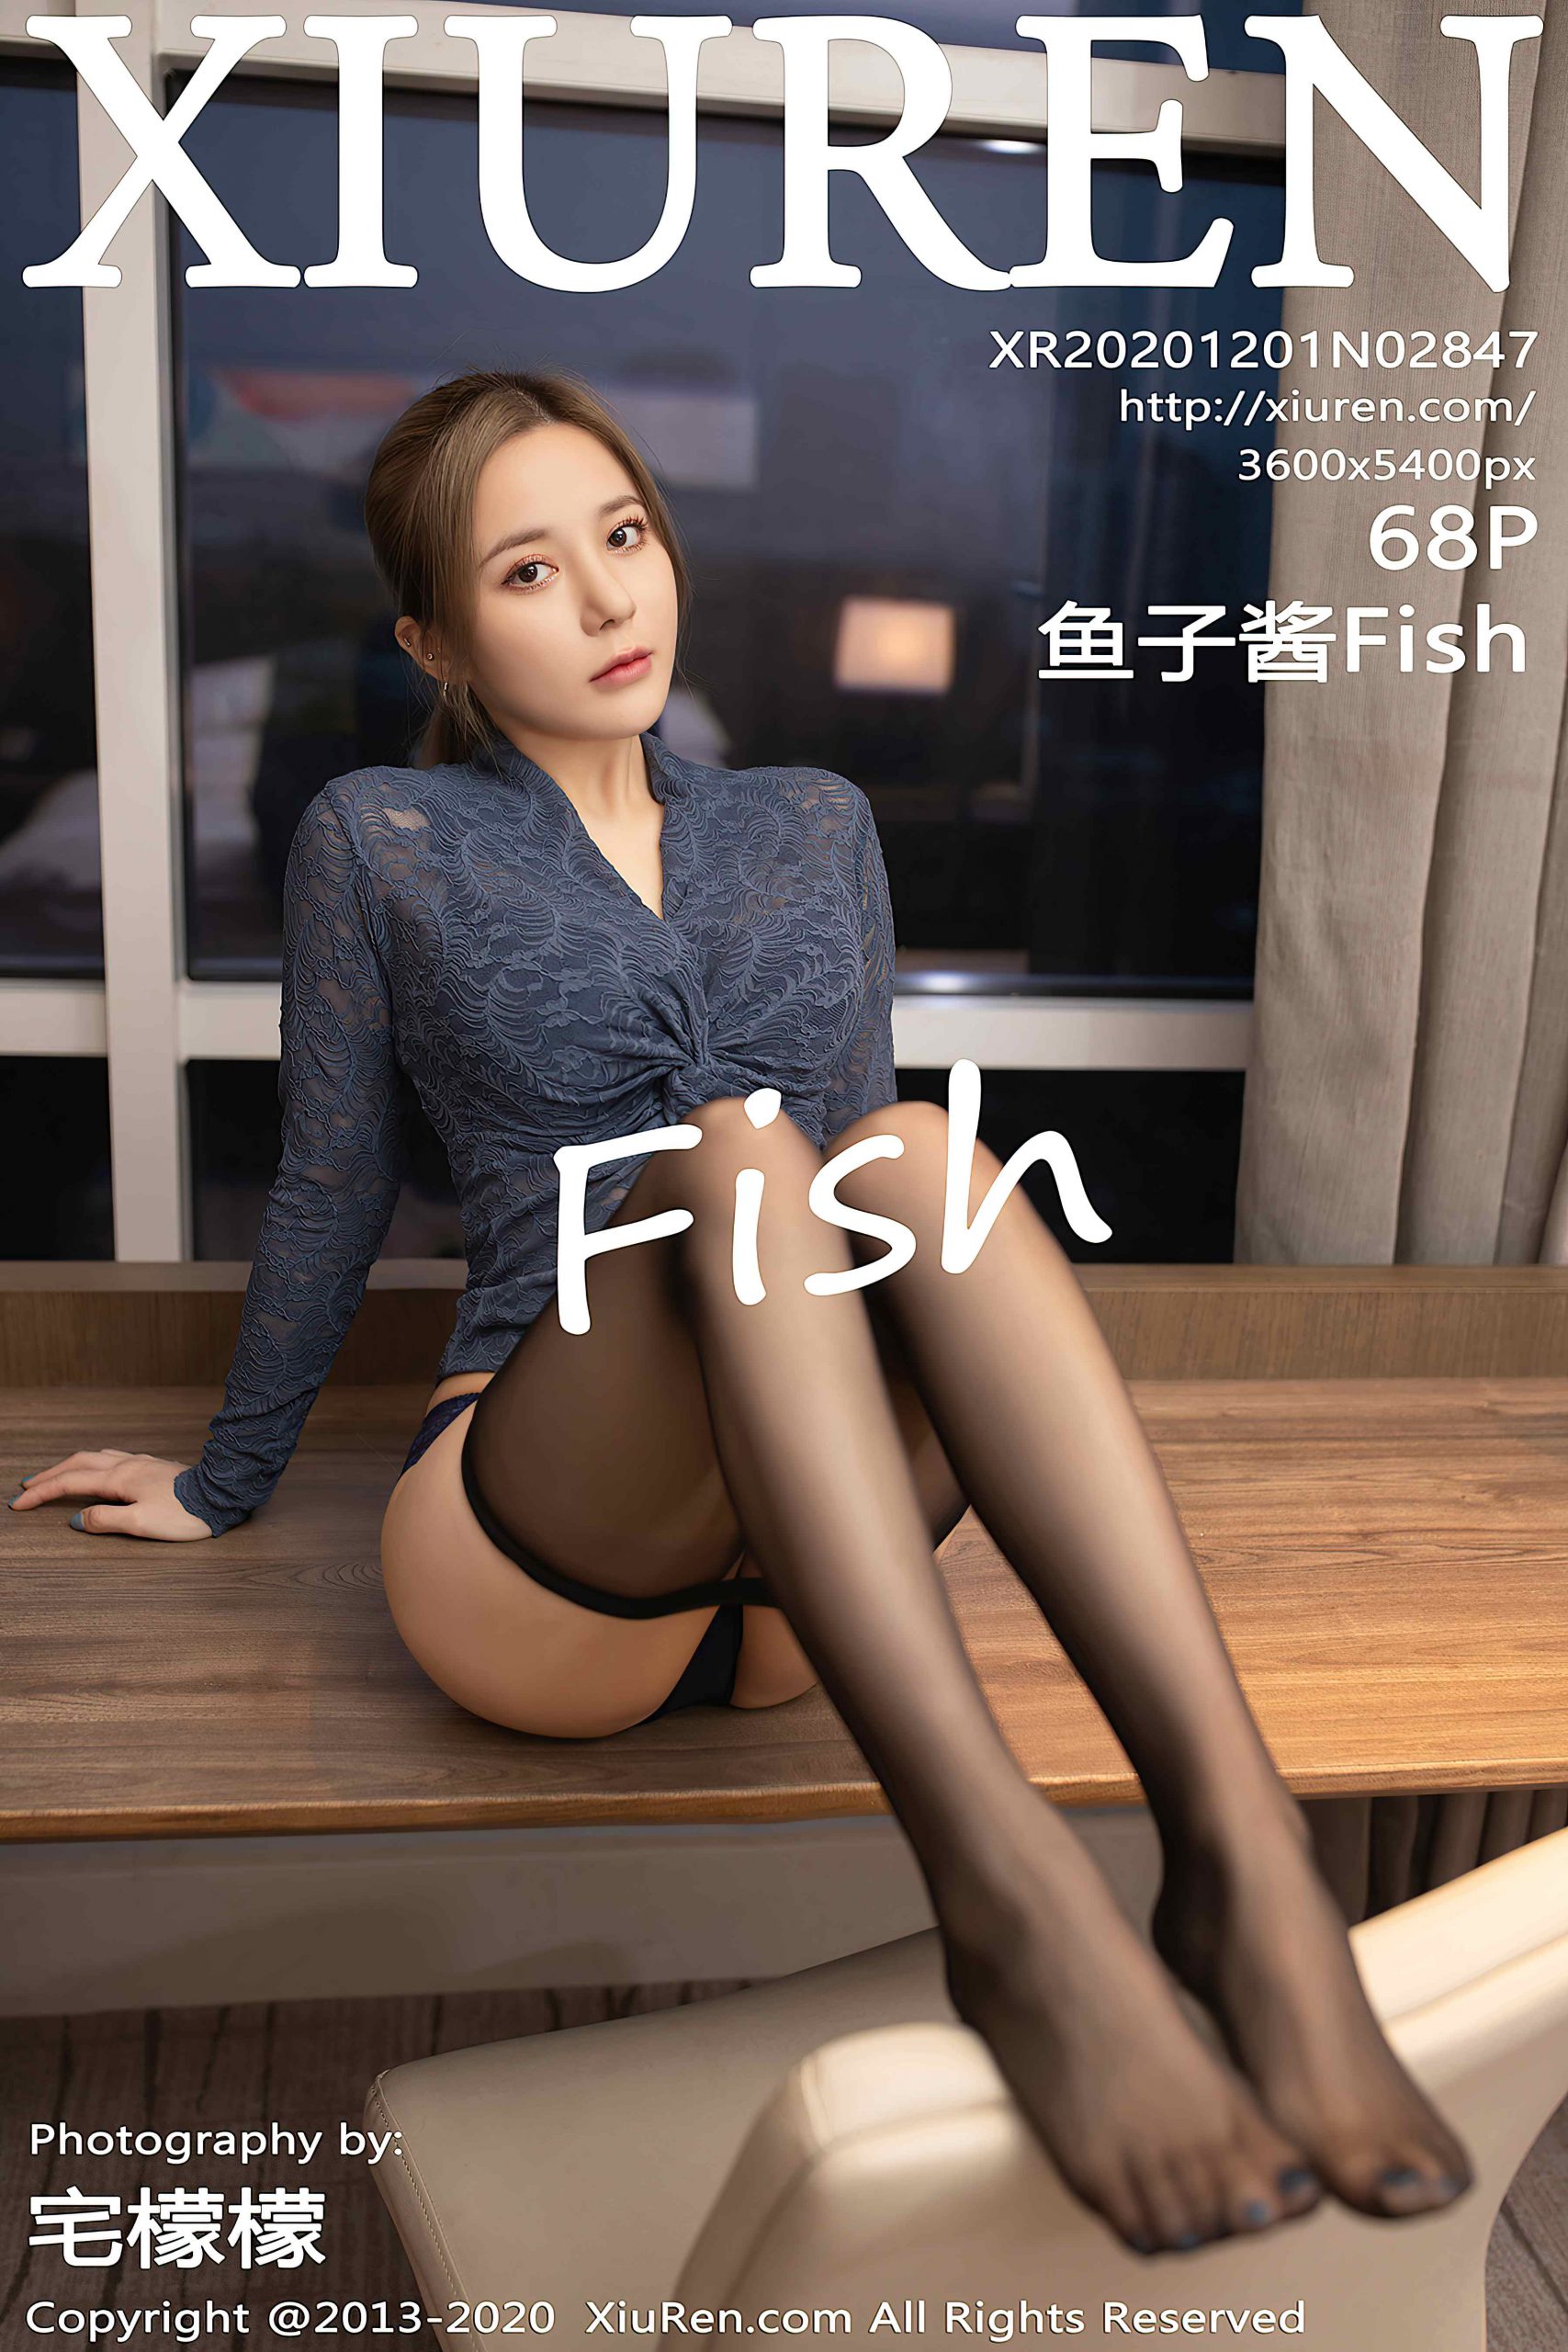 [XiuRen秀人网] 2020.12.01 No.2847 鱼子酱Fish[68P/683M]